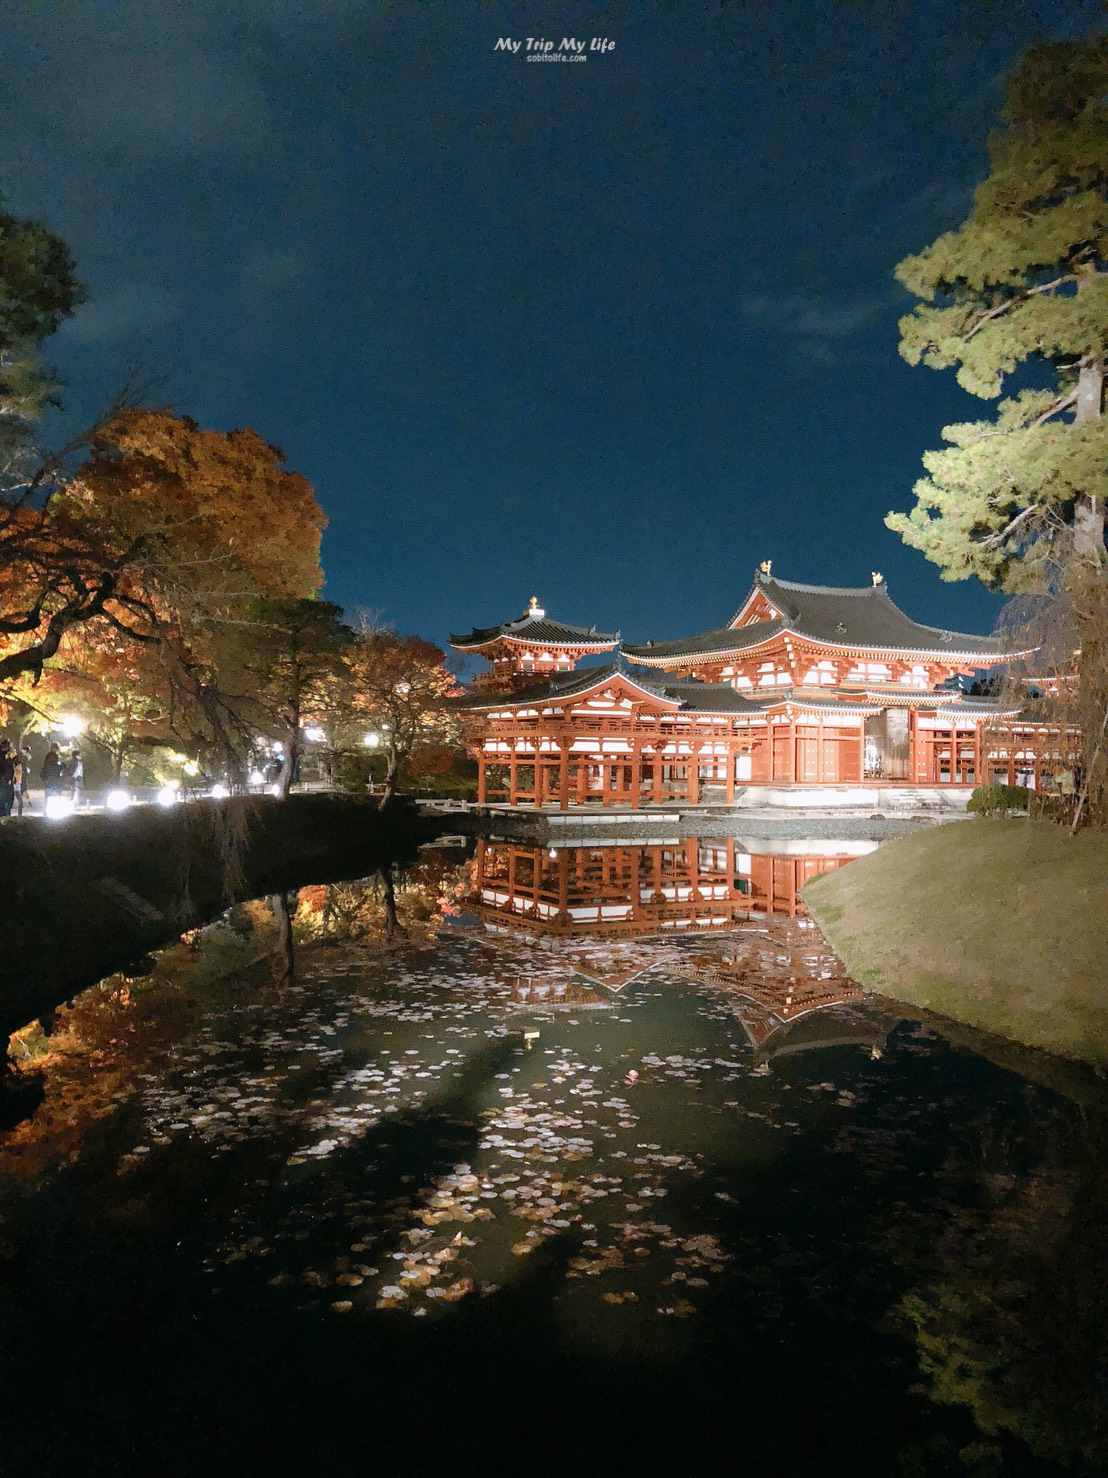 【日本旅遊】京都平等院秋季夜間特別拜觀2019、特別朱印 @MY TRIP ‧ MY LIFE